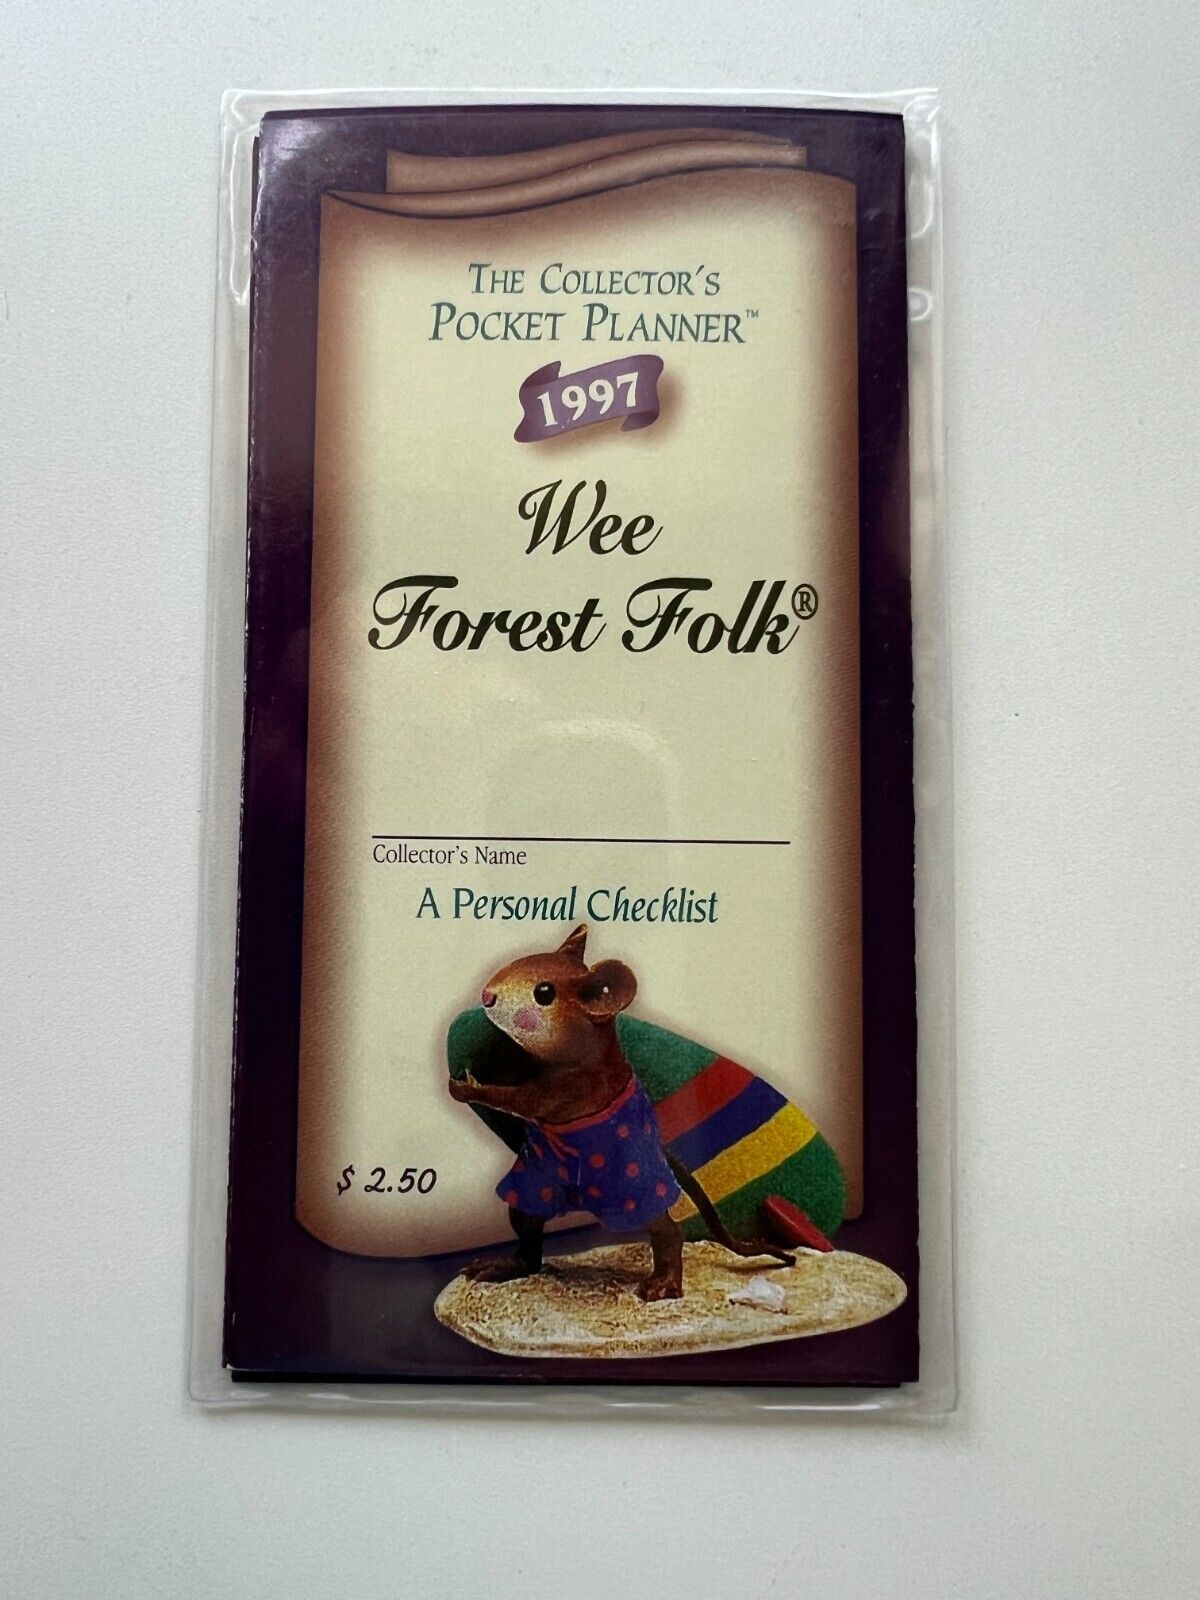 WEE FOREST FOLK 1997 Pocket Planner